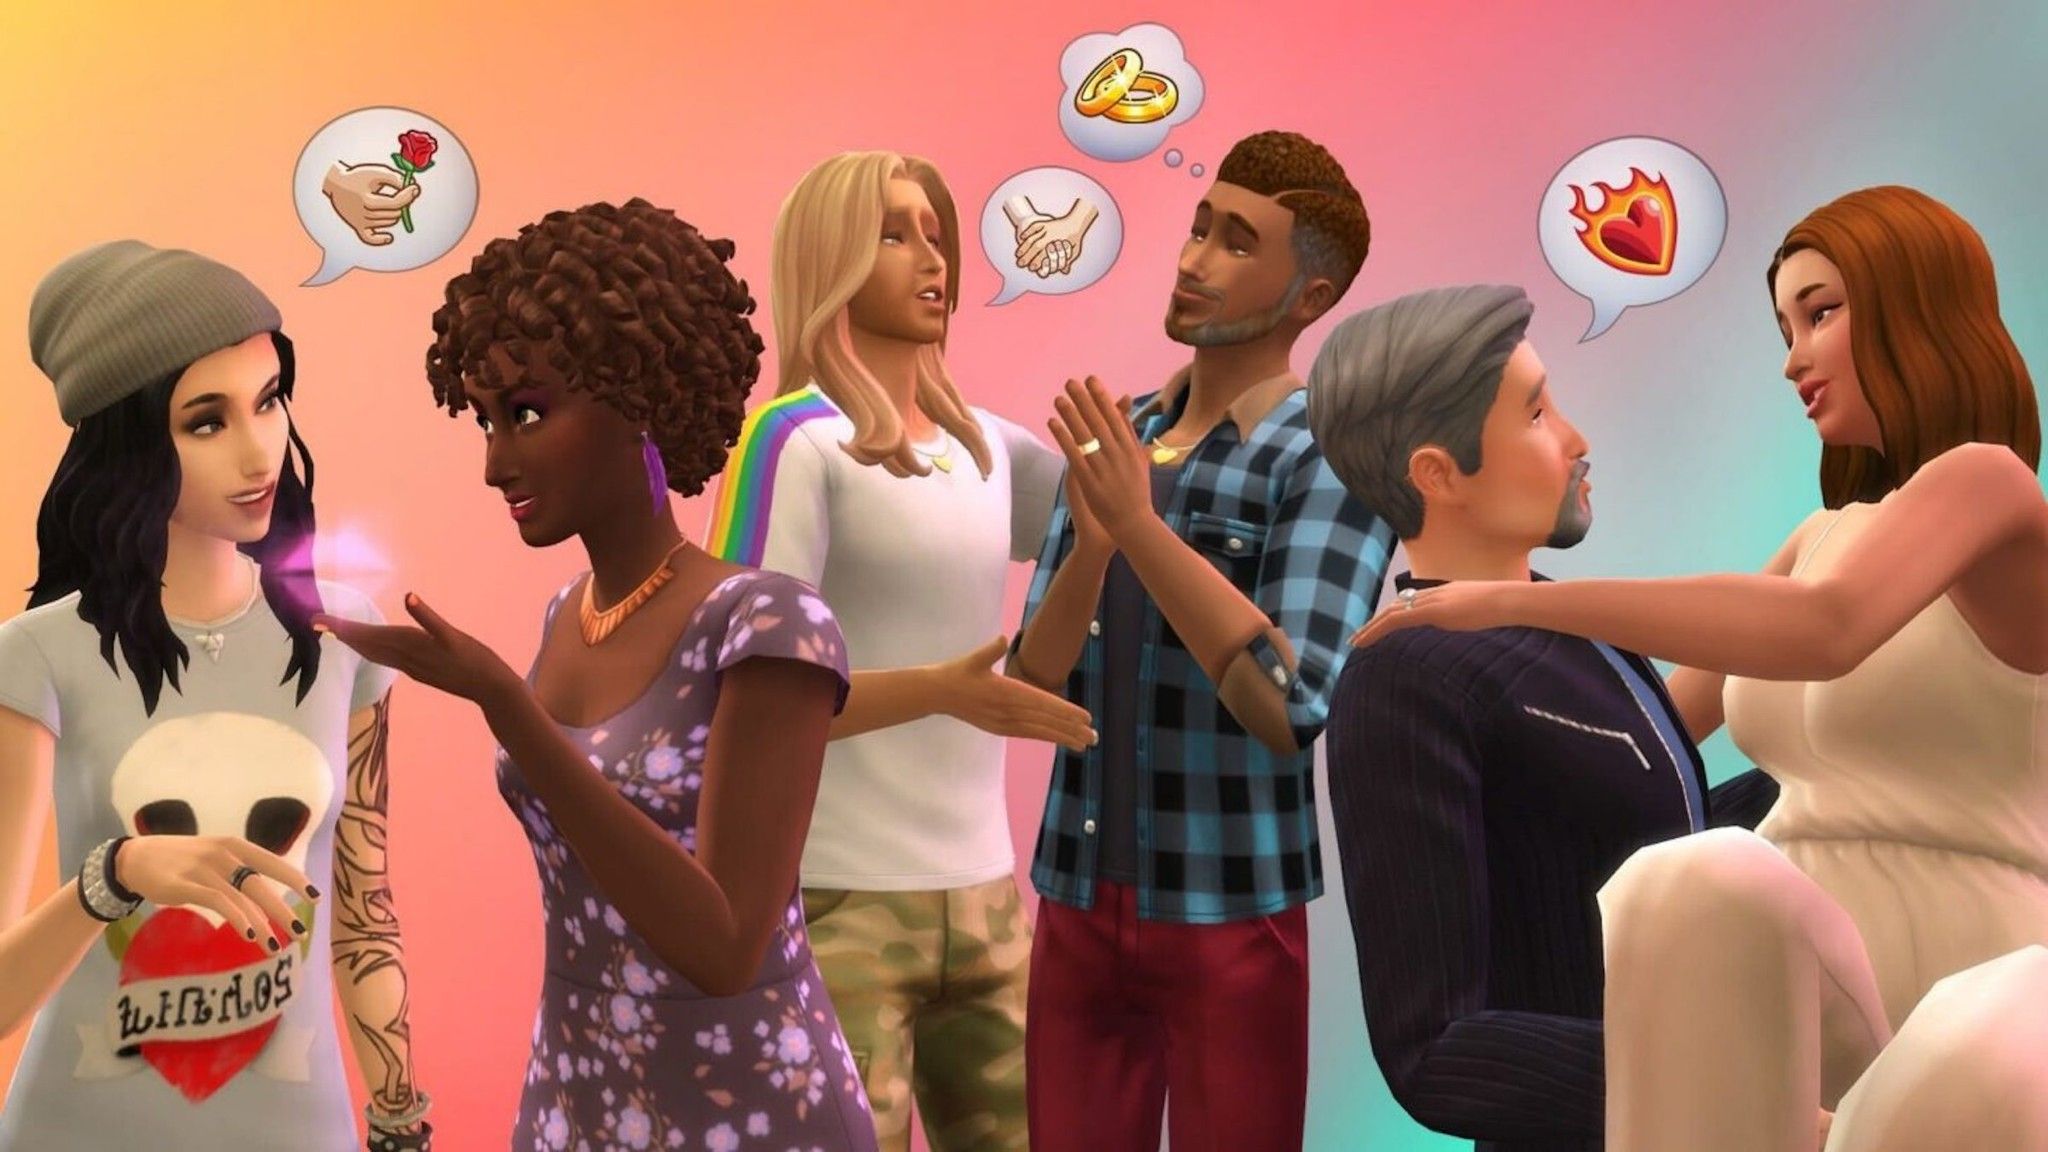 Nhằm tạo sự đa dạng trong tình yêu, The Sims 4 cho phép bạn yêu trai, gái hoặc không ai cả